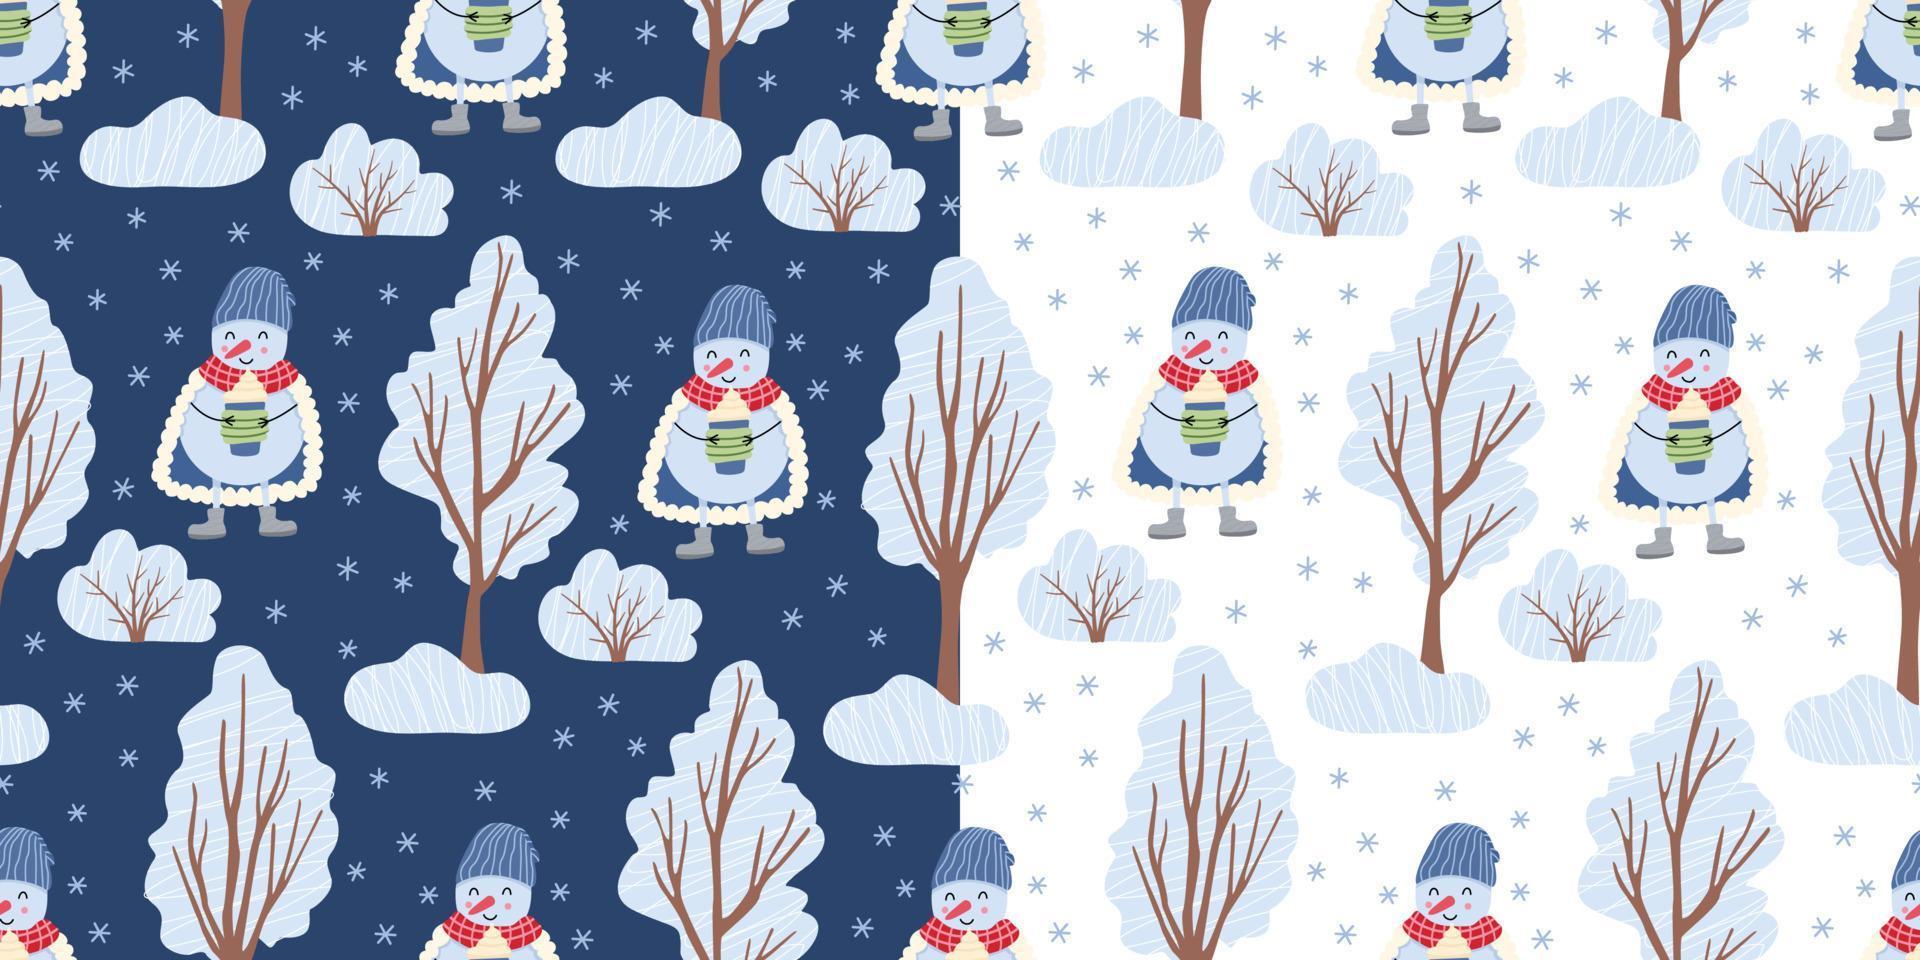 dos patrones sin fisuras con muñecos de nieve y árboles de invierno sobre fondos blancos y azules. ilustración plana vectorial. ideal para telas, papel de envolver, diseño navideño. vector